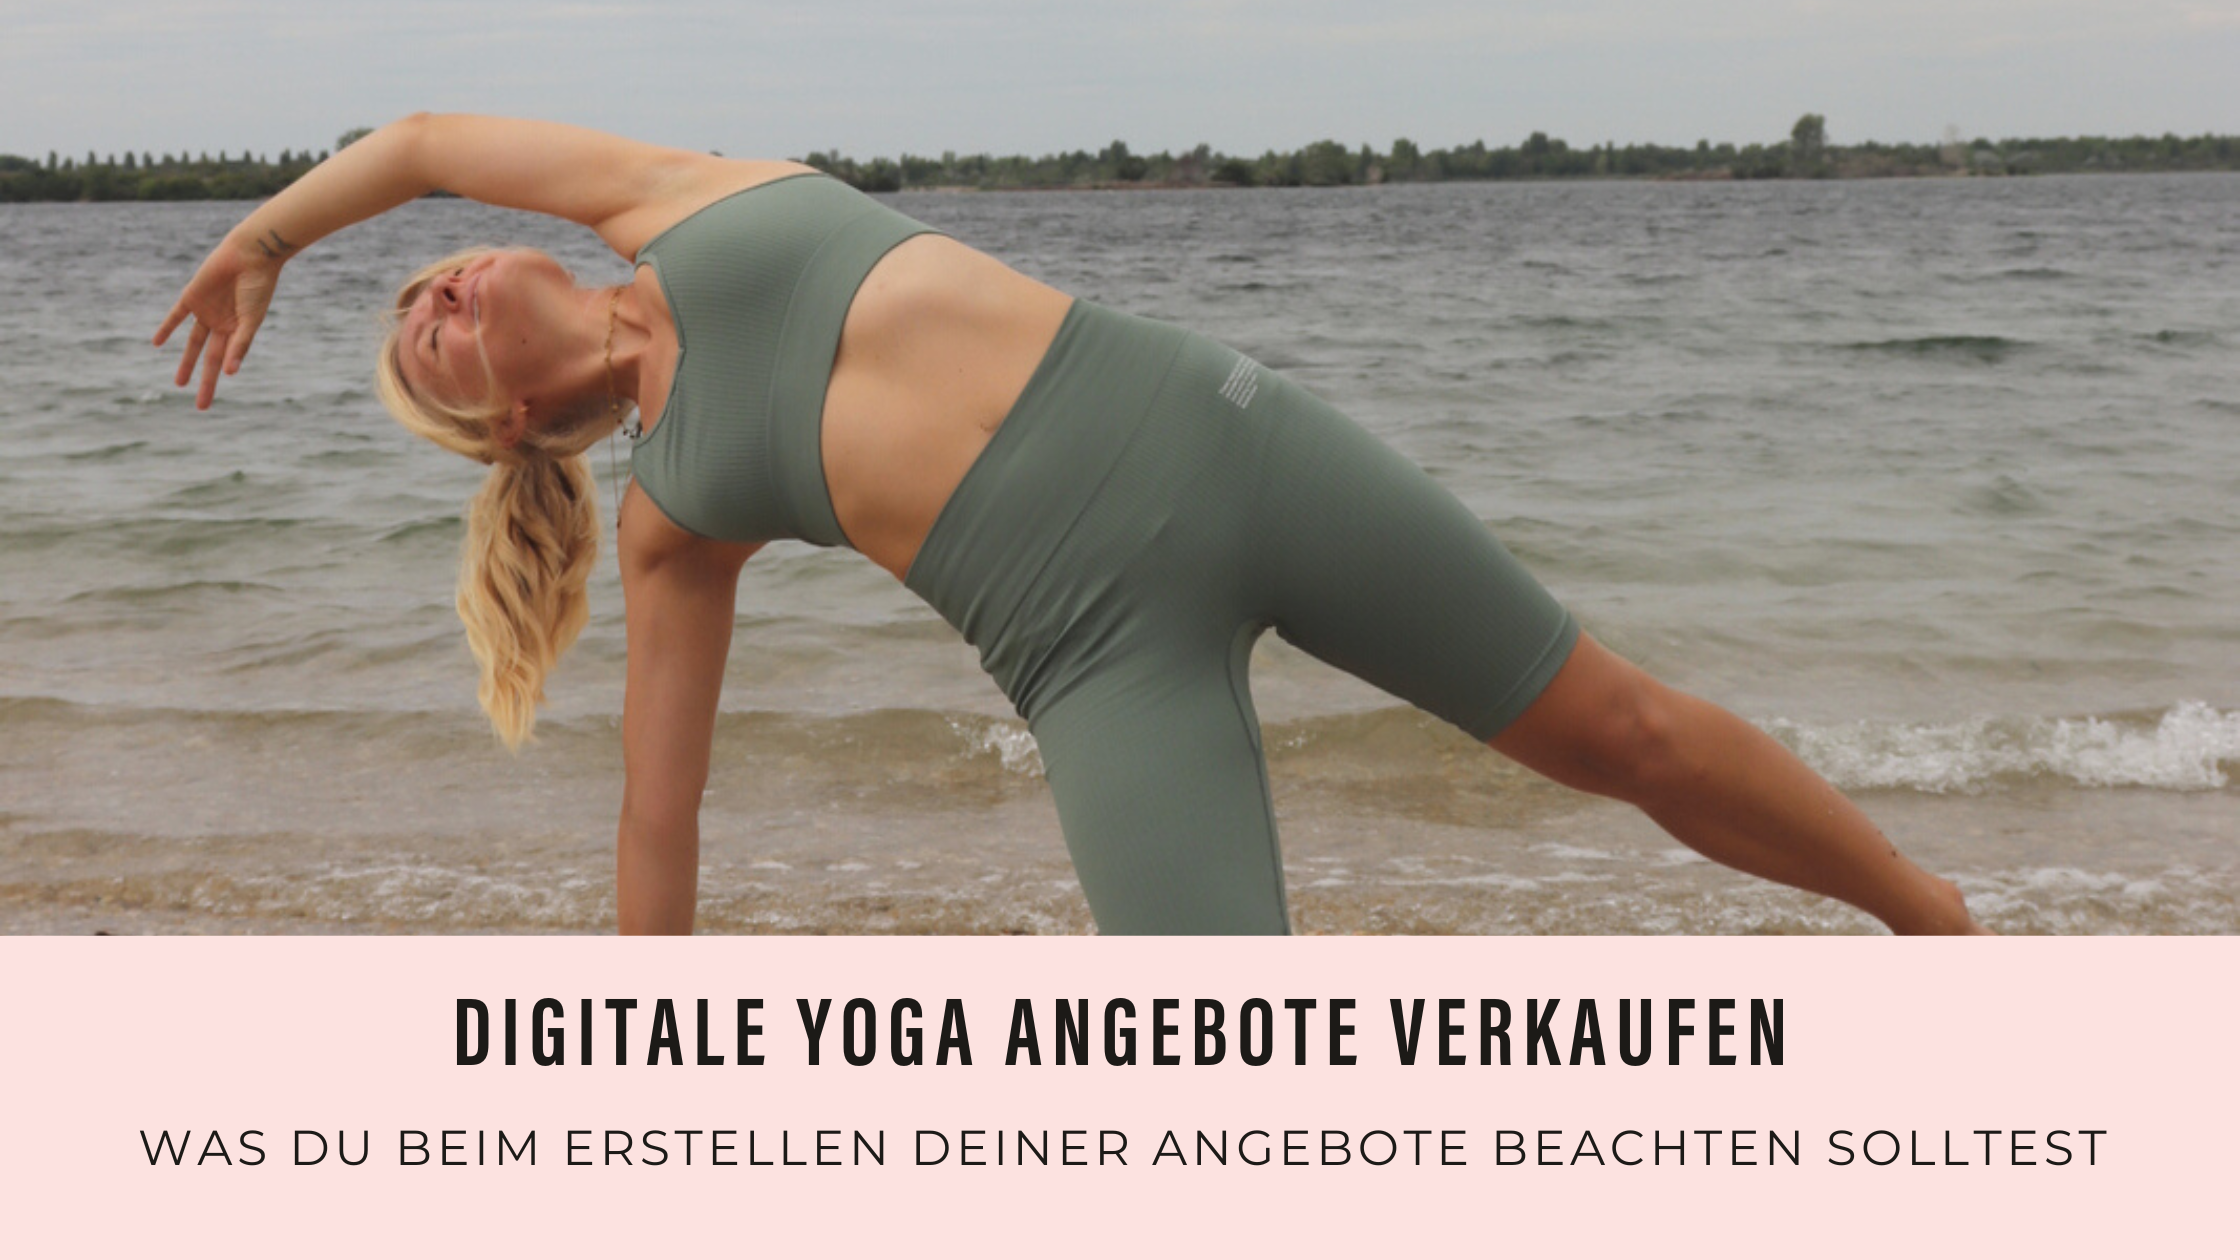 Antonia von Yoga als Beruf praktiziert Yoga am Strang in grüner Yogabekleidung